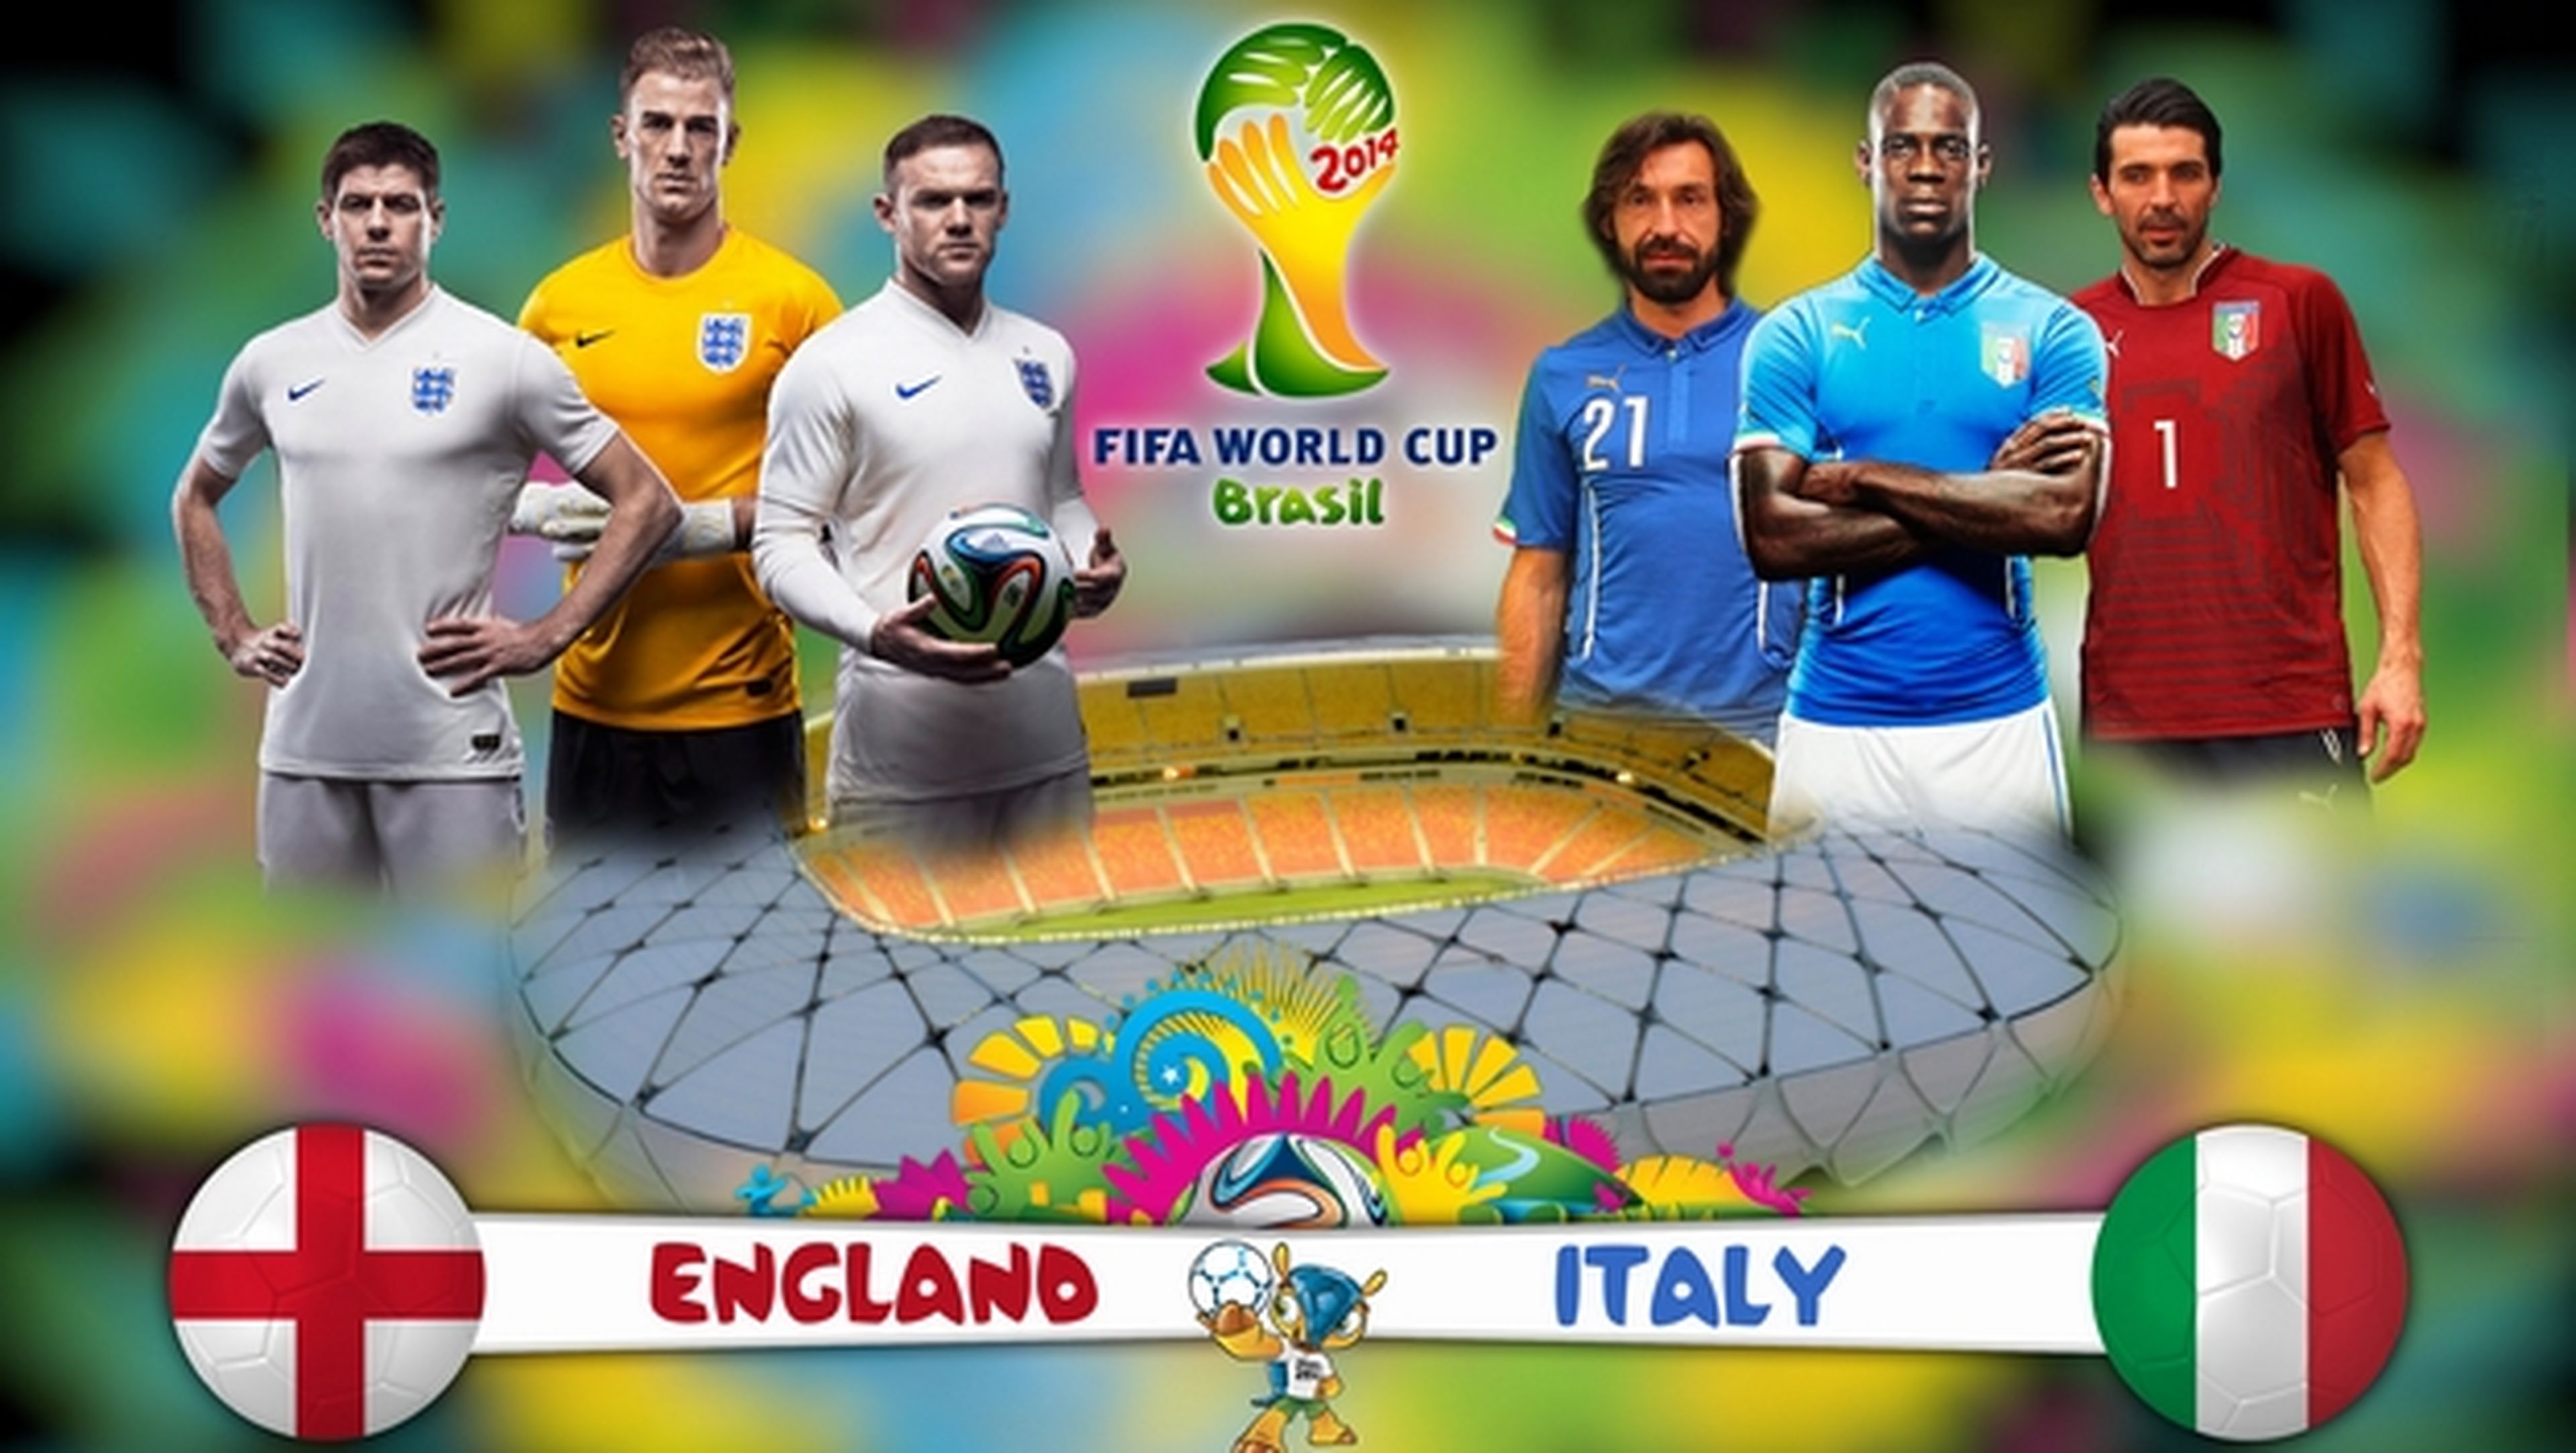 Ver online el partido del Mundial Inglaterra - Italia, gratis y en abierto.